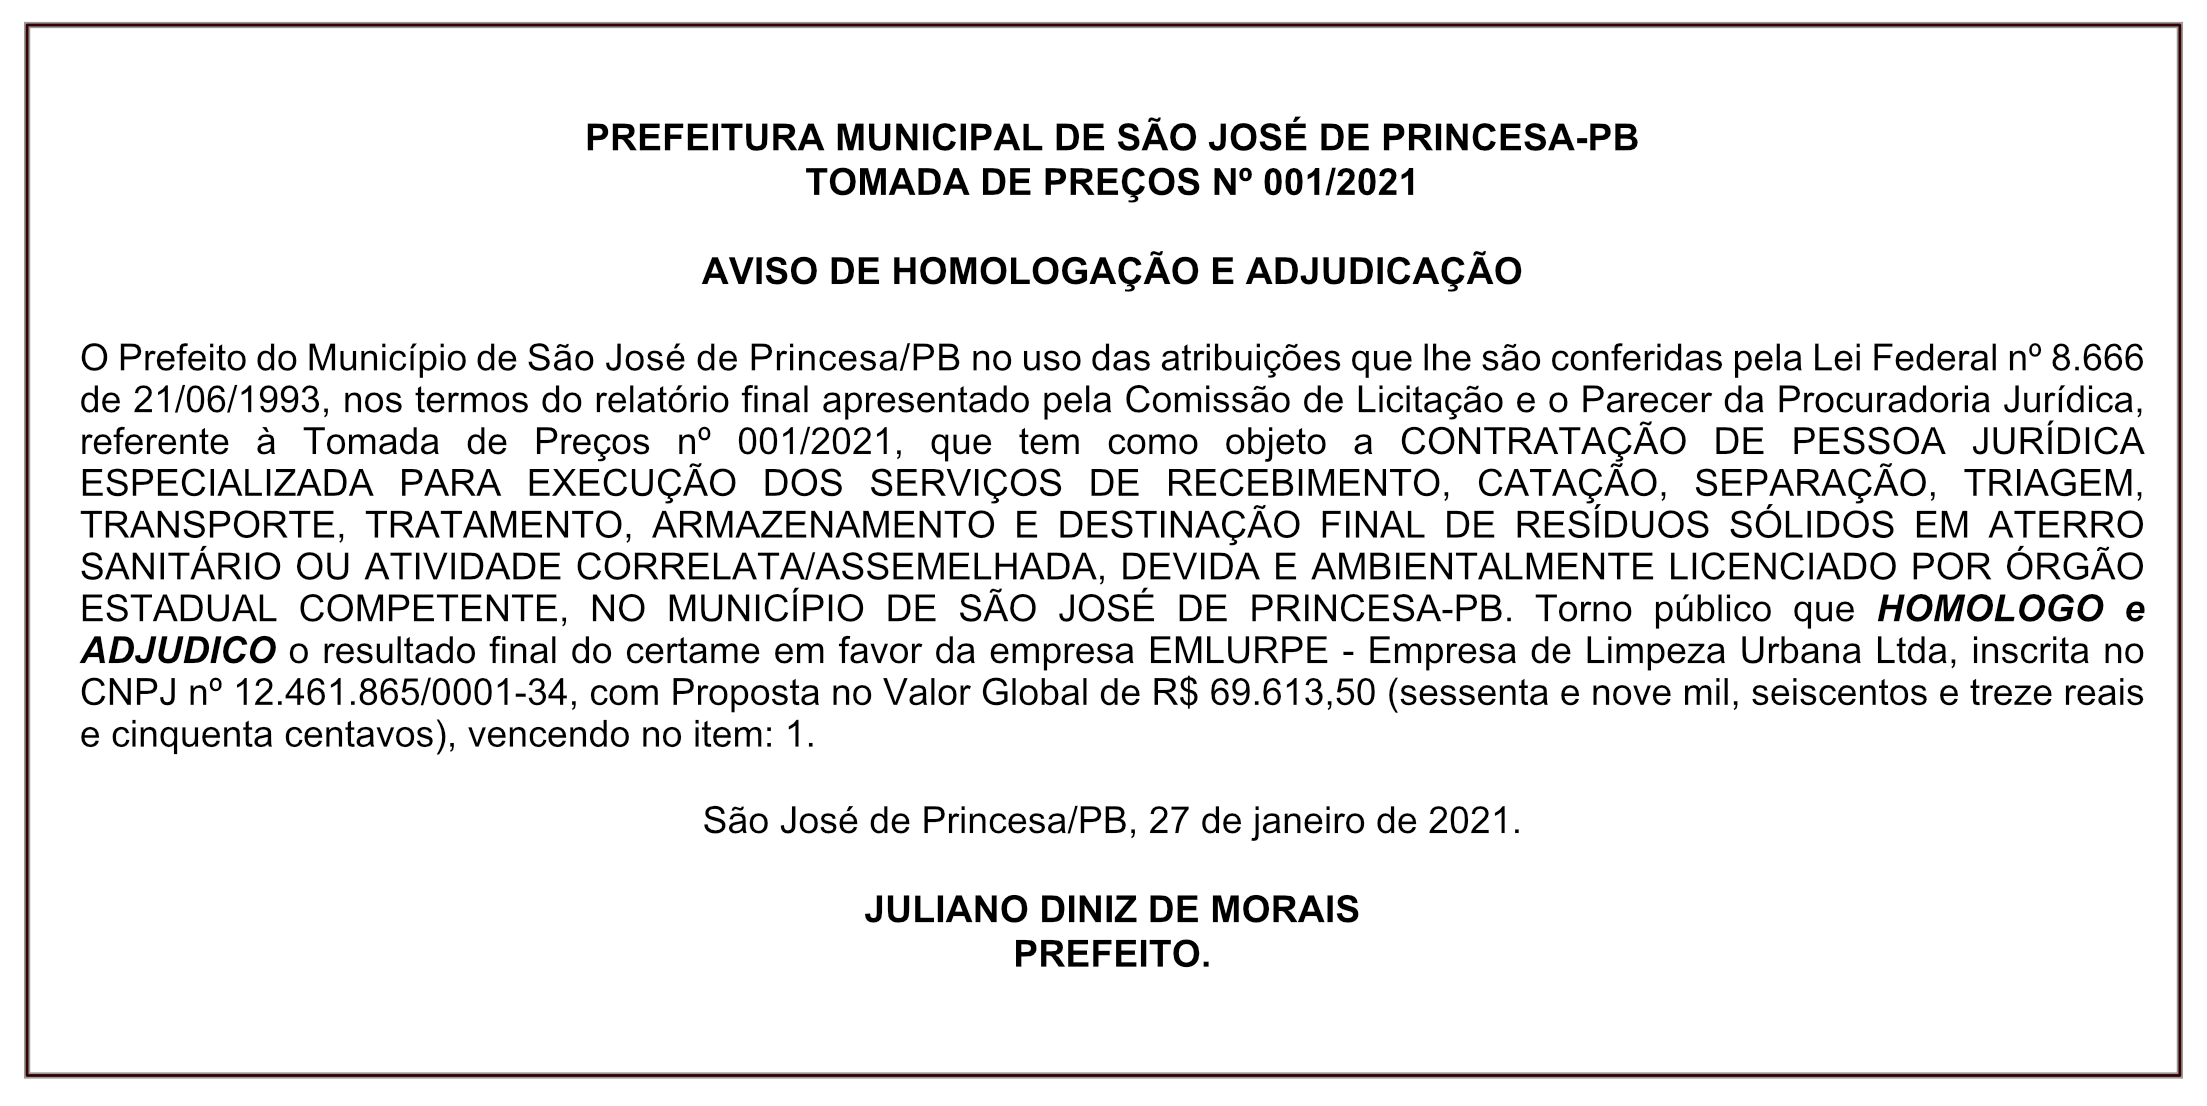 PREFEITURA MUNICIPAL DE SÃO JOSÉ DE PRINCESA-PB  – TOMADA DE PREÇOS Nº 001/2021 – AVISO DE HOMOLOGAÇÃO E ADJUDICAÇÃO